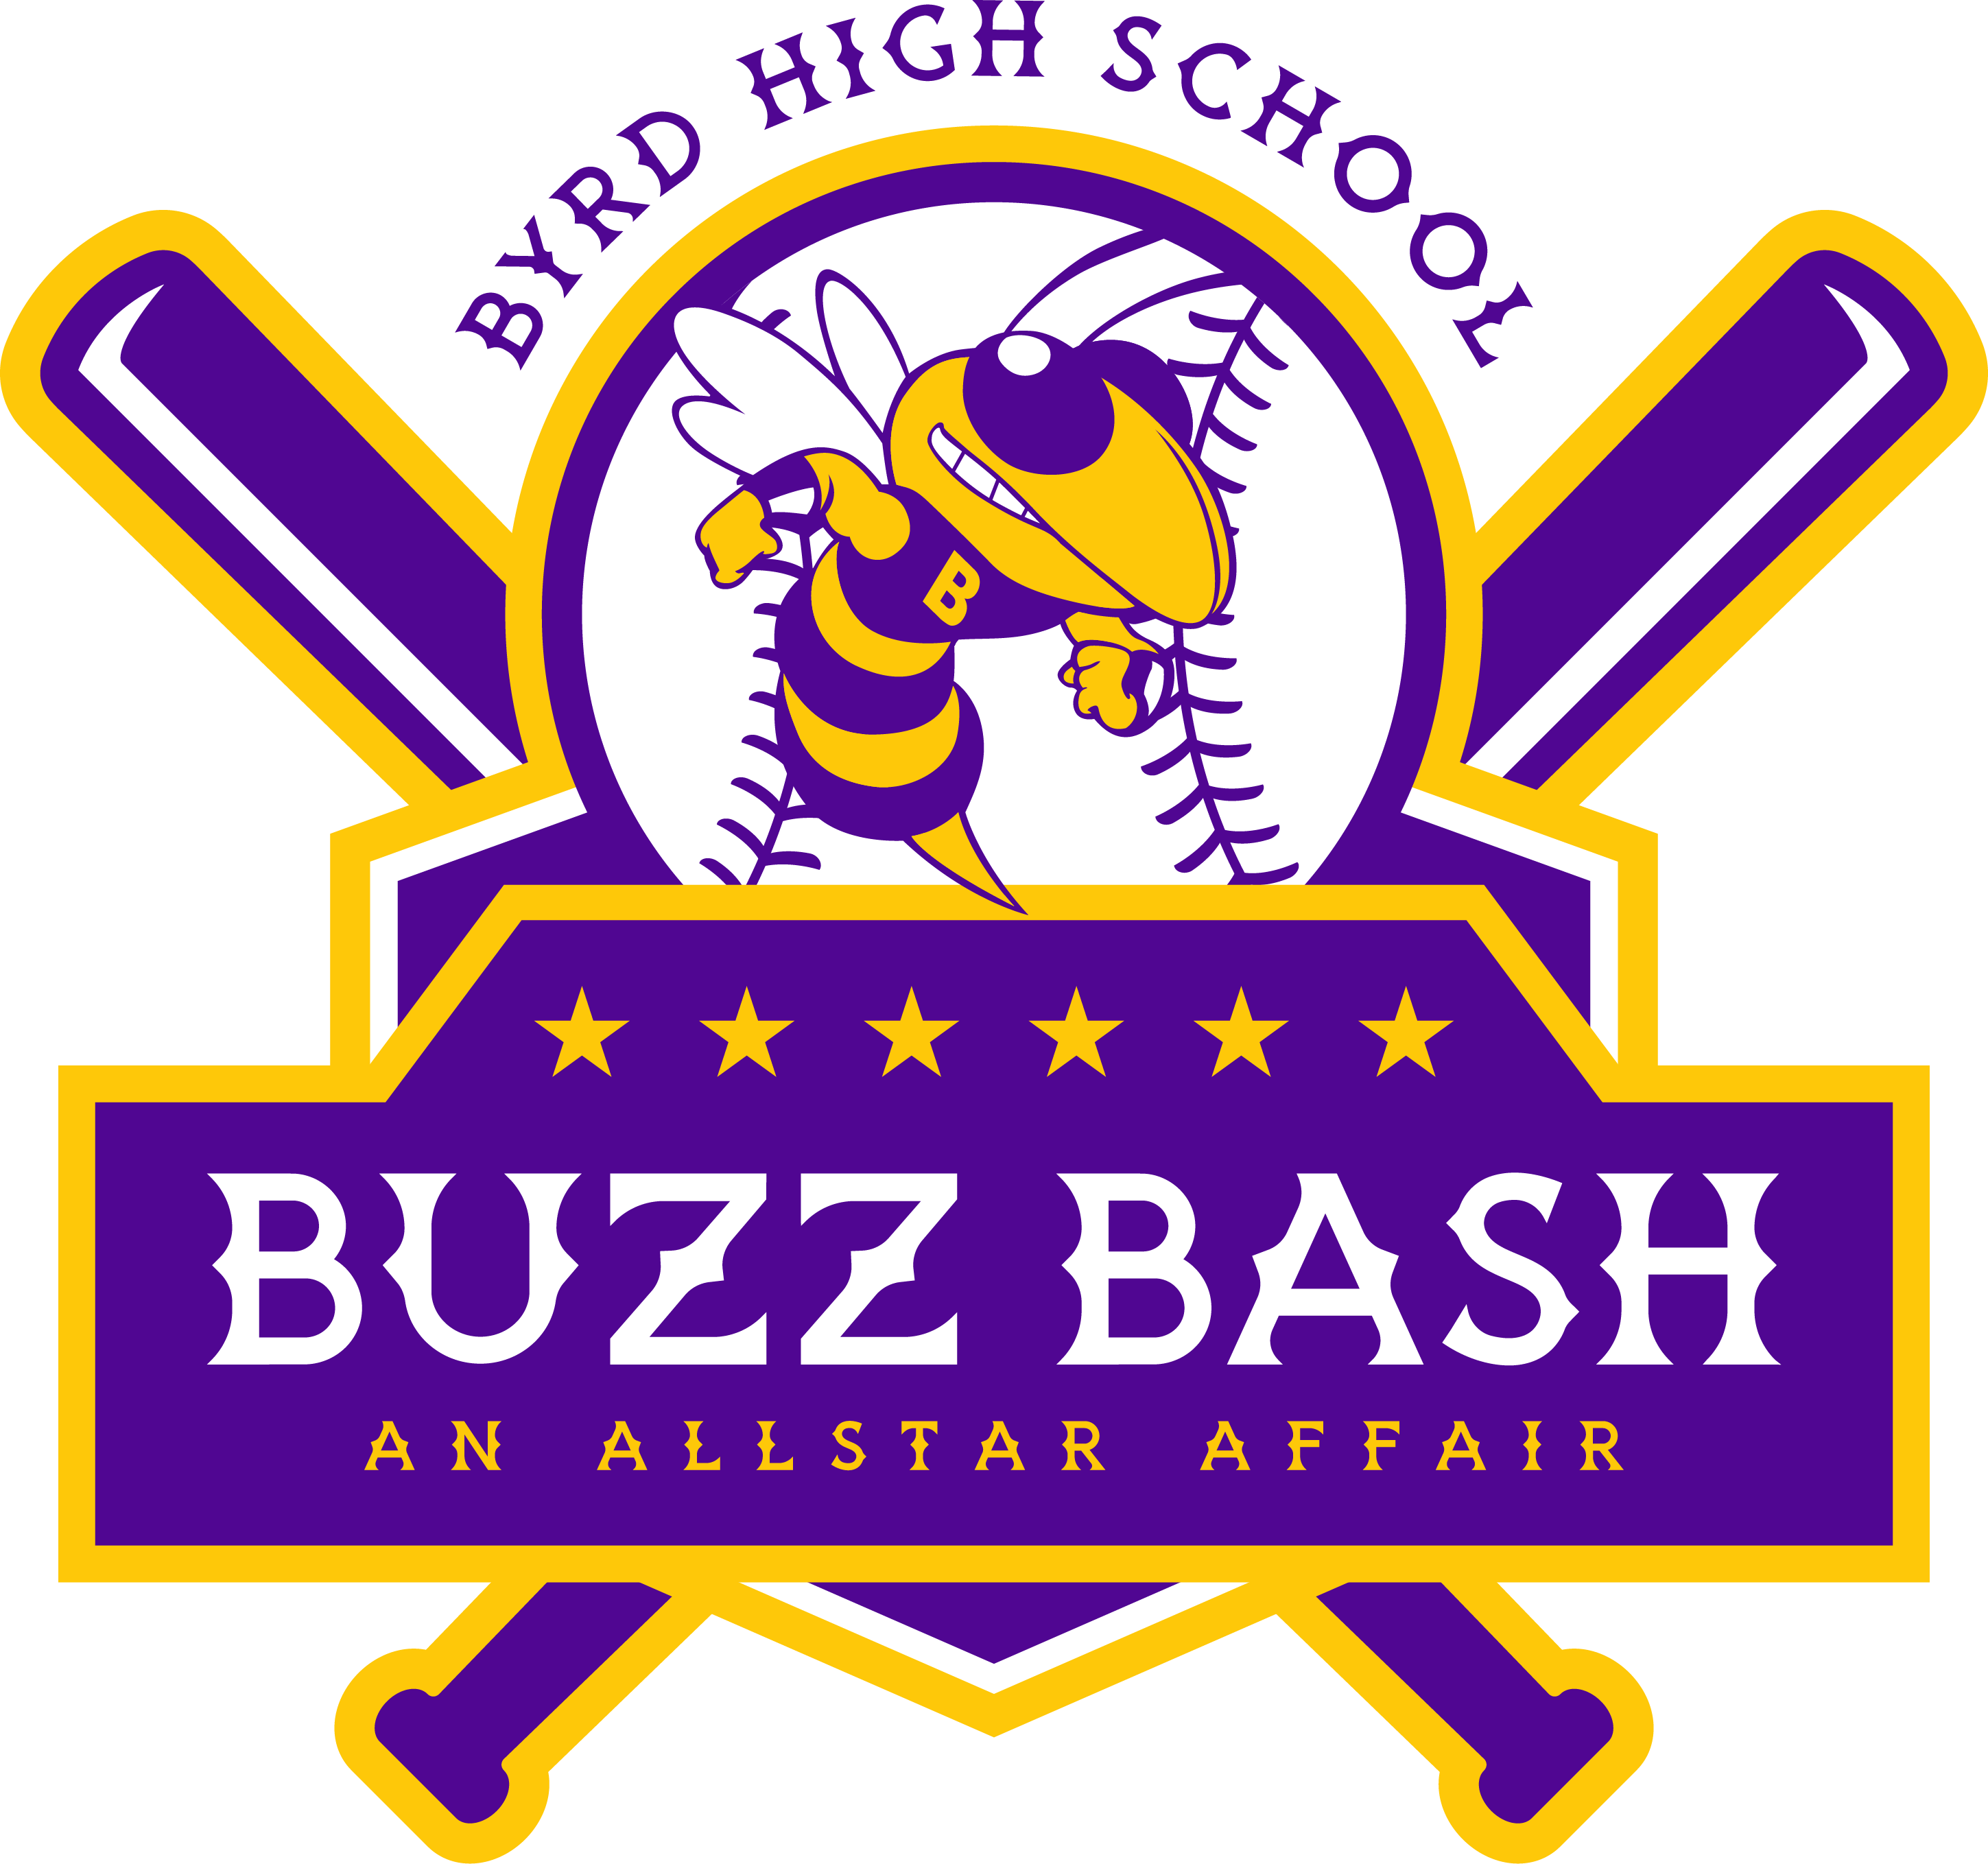 Local Level Events Byrd Baseball Buzz Bash TShirt Sale 20232024